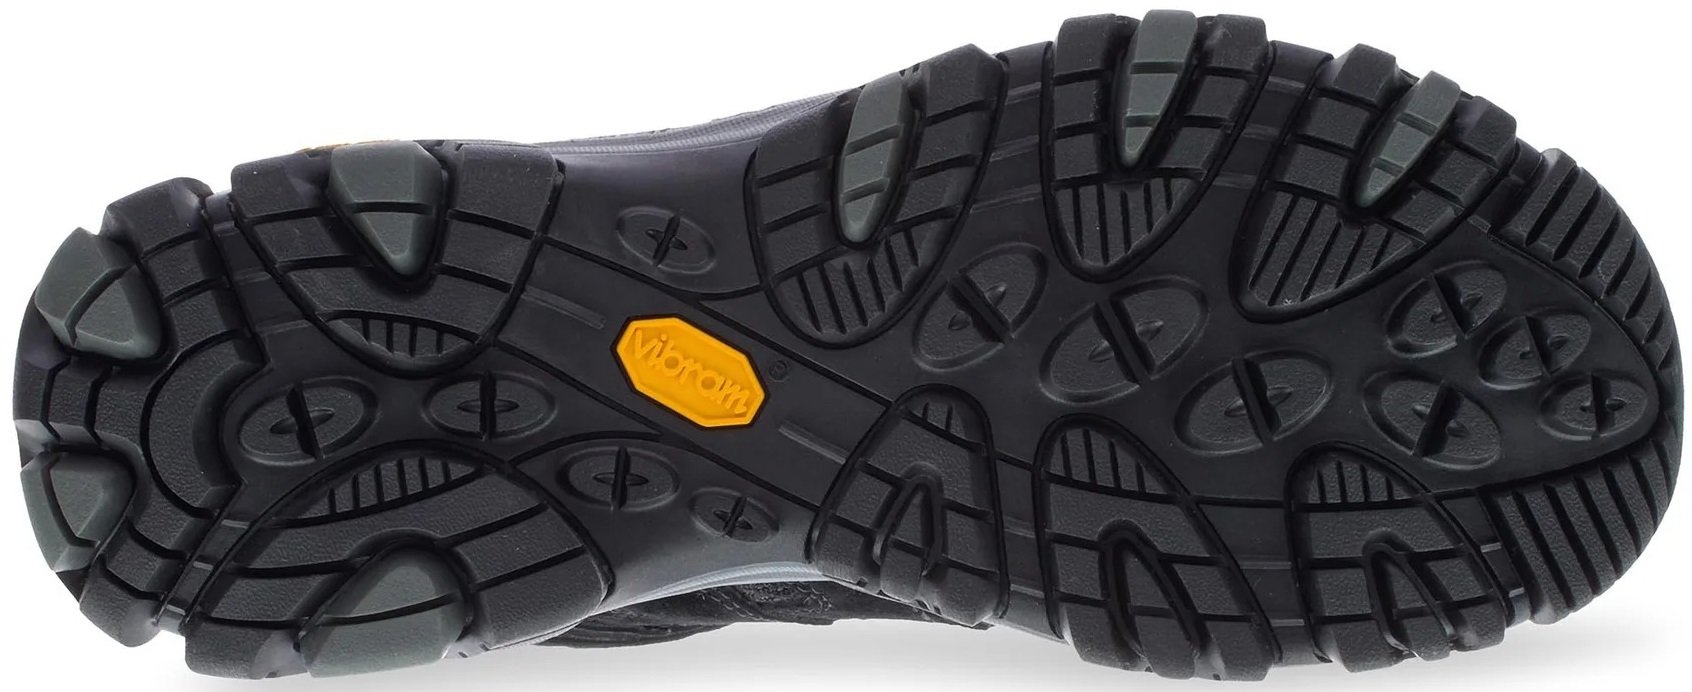 Ботинки мужские Merrell Moab 3 MID GTX black/grey 44 черный фото 4